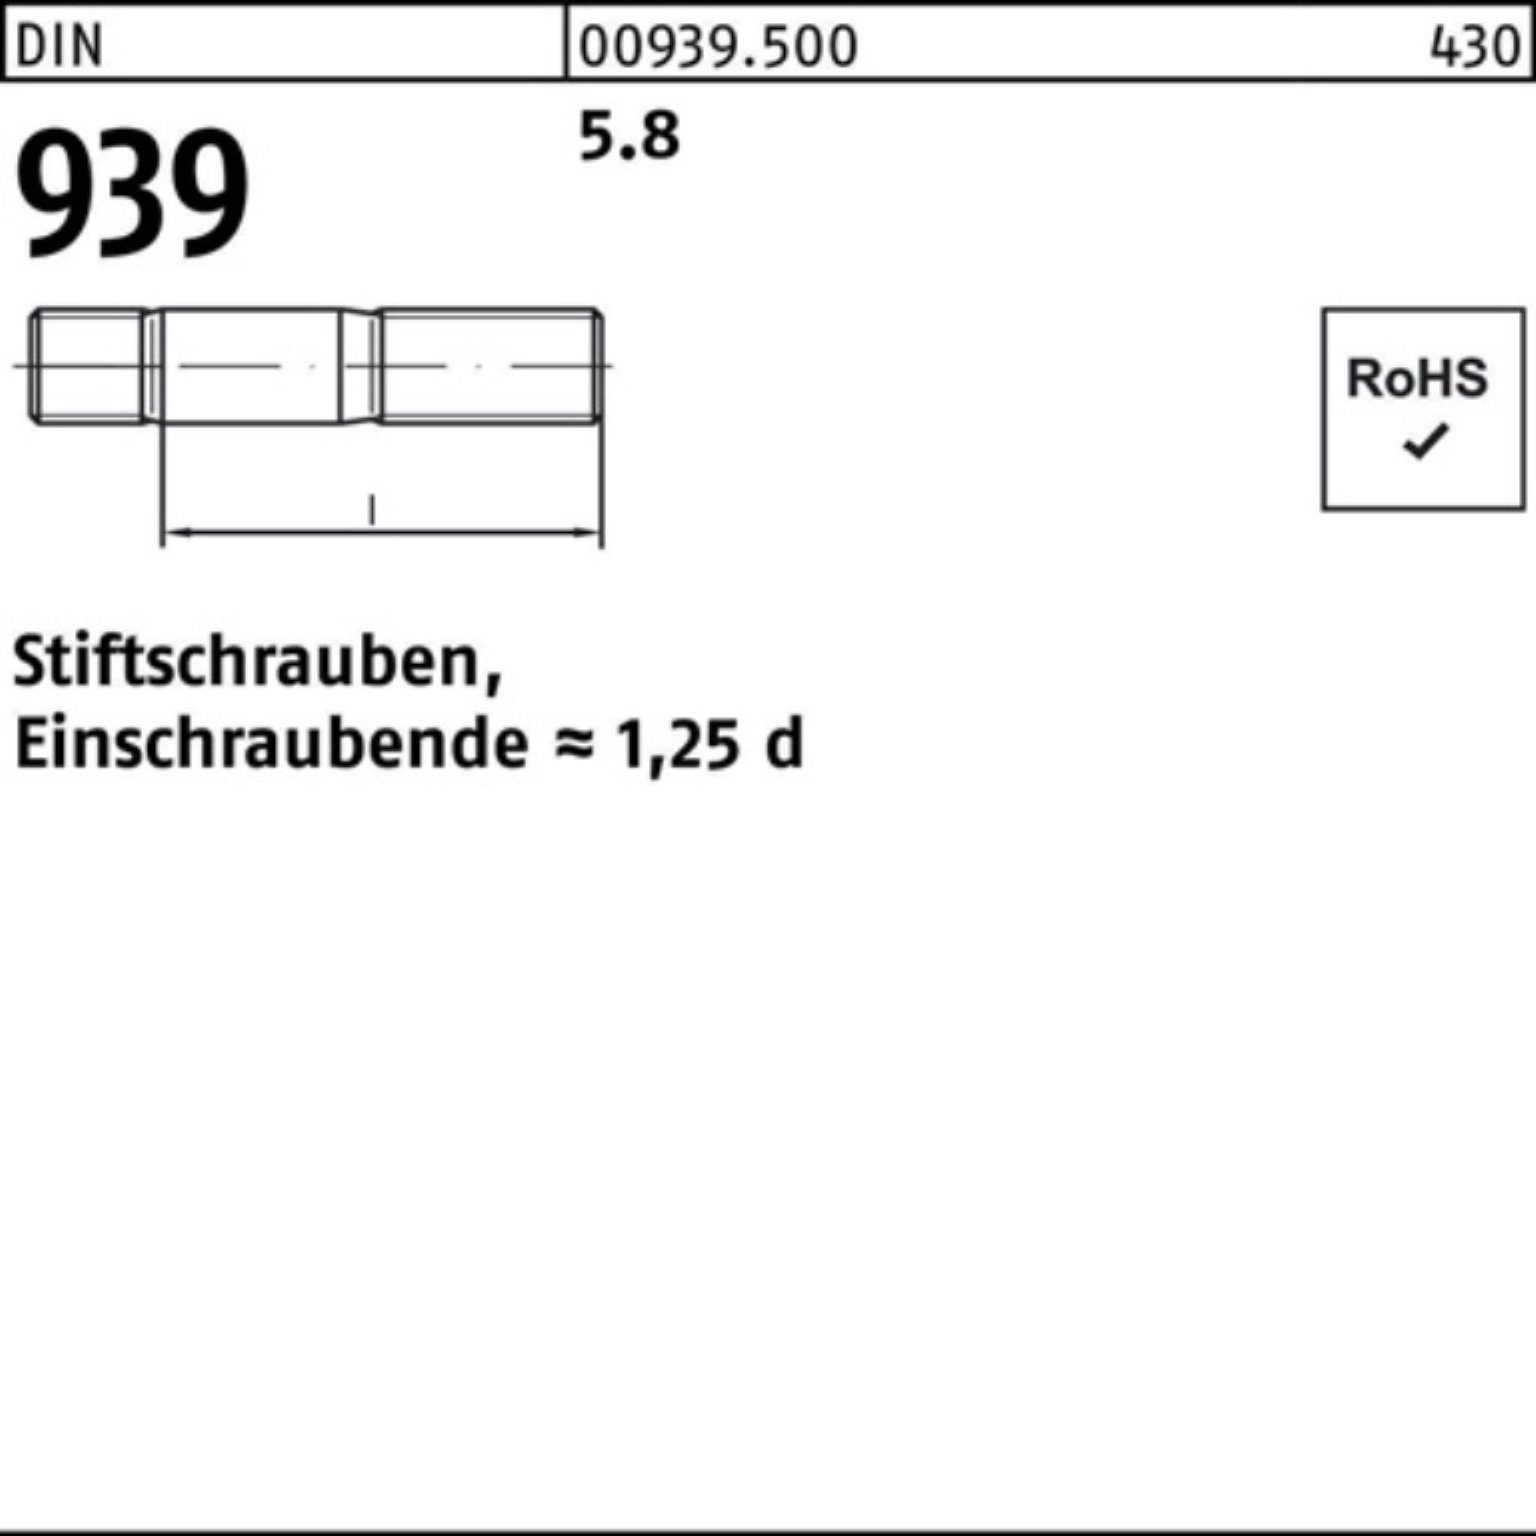 DIN 100er Pack 100 M12x 5.8 Stiftschraube Stiftschraube 939 Reyher Einschraubende=1,25d 40